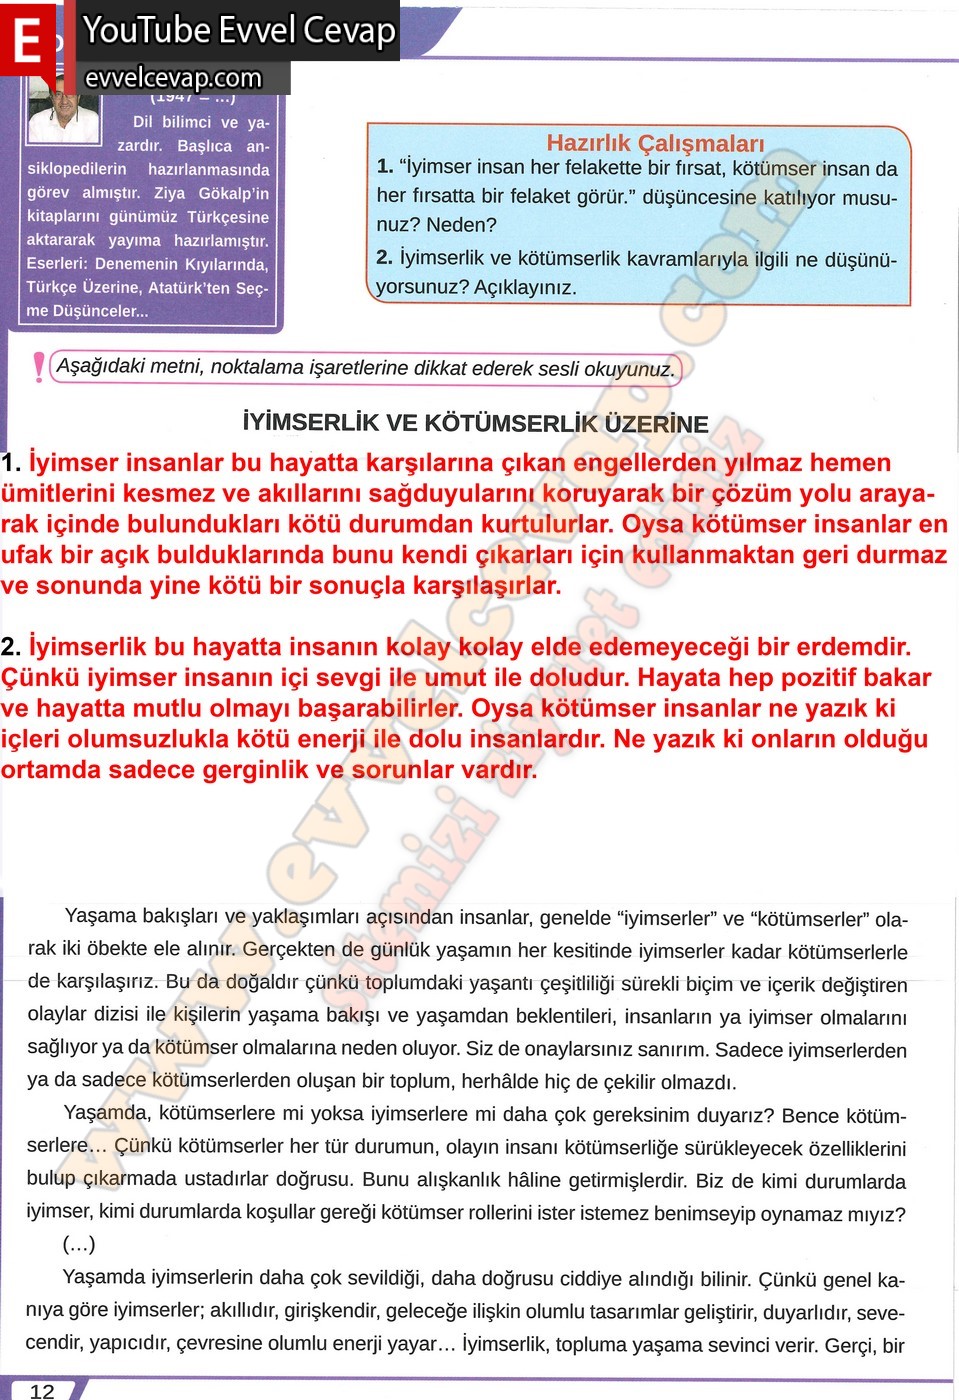 8. sınıf Meb Yayınları Türkçe Ders Kitabı Sayfa 12-14-15-16 ...